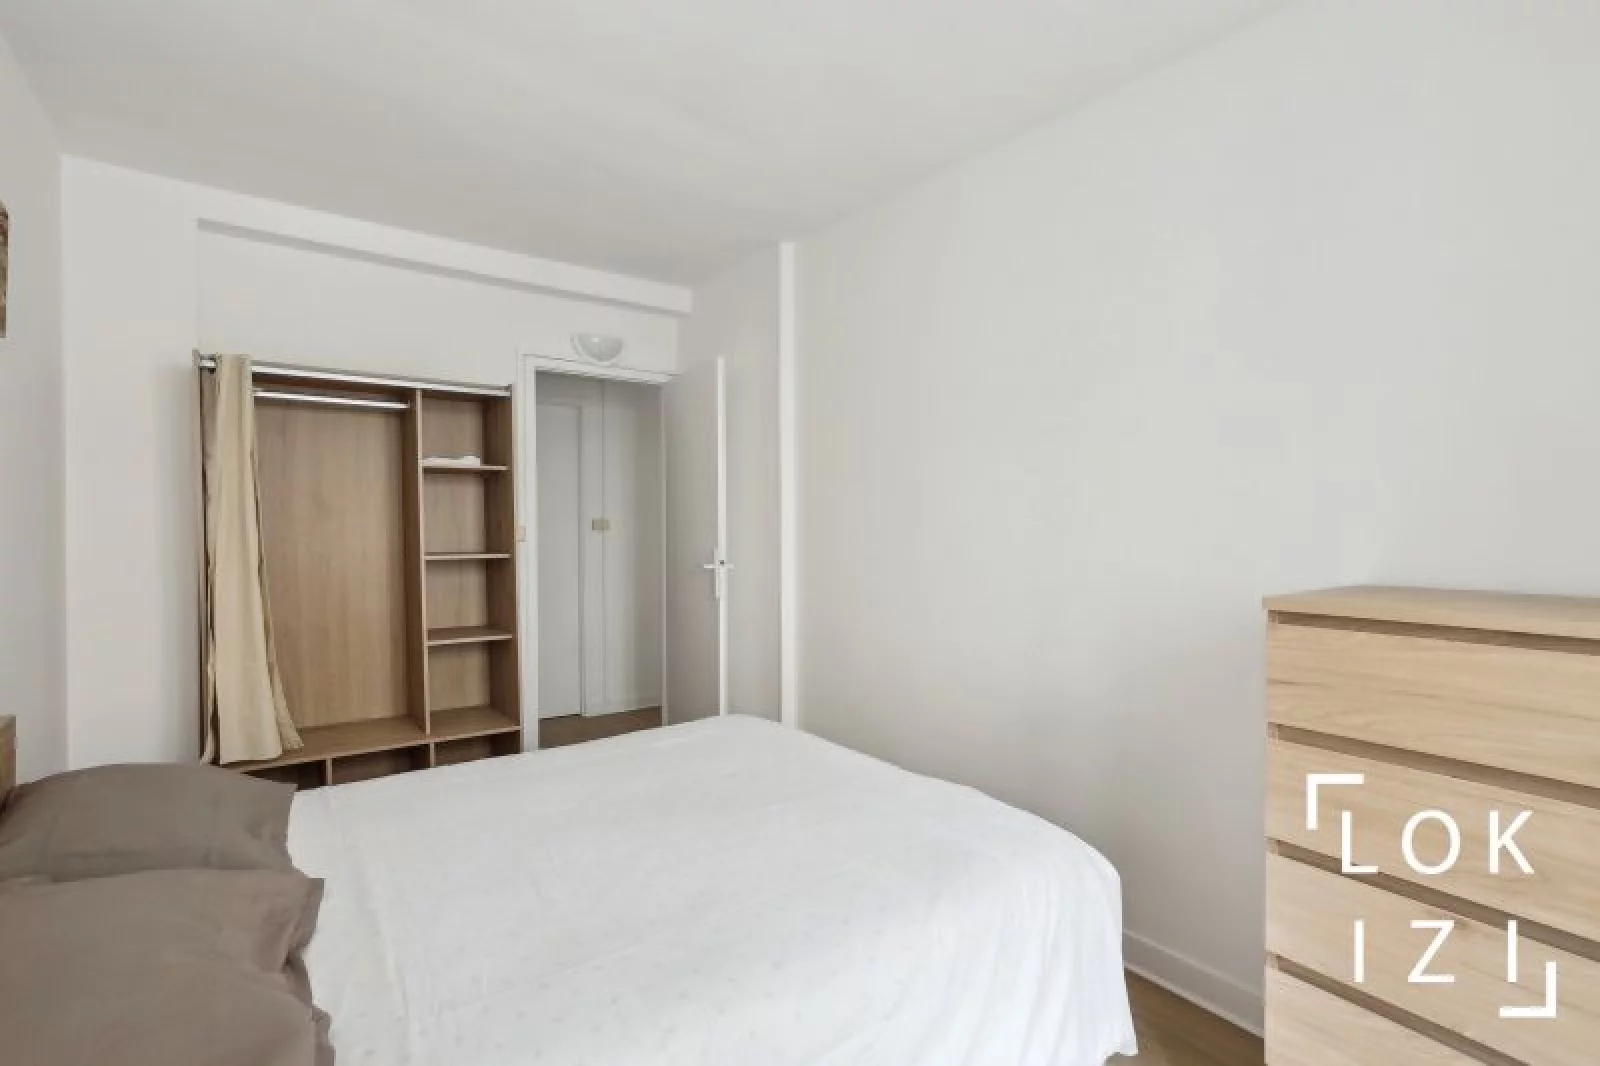 Location appartement meublé 3 pièces 53m² (Paris est 12ème)